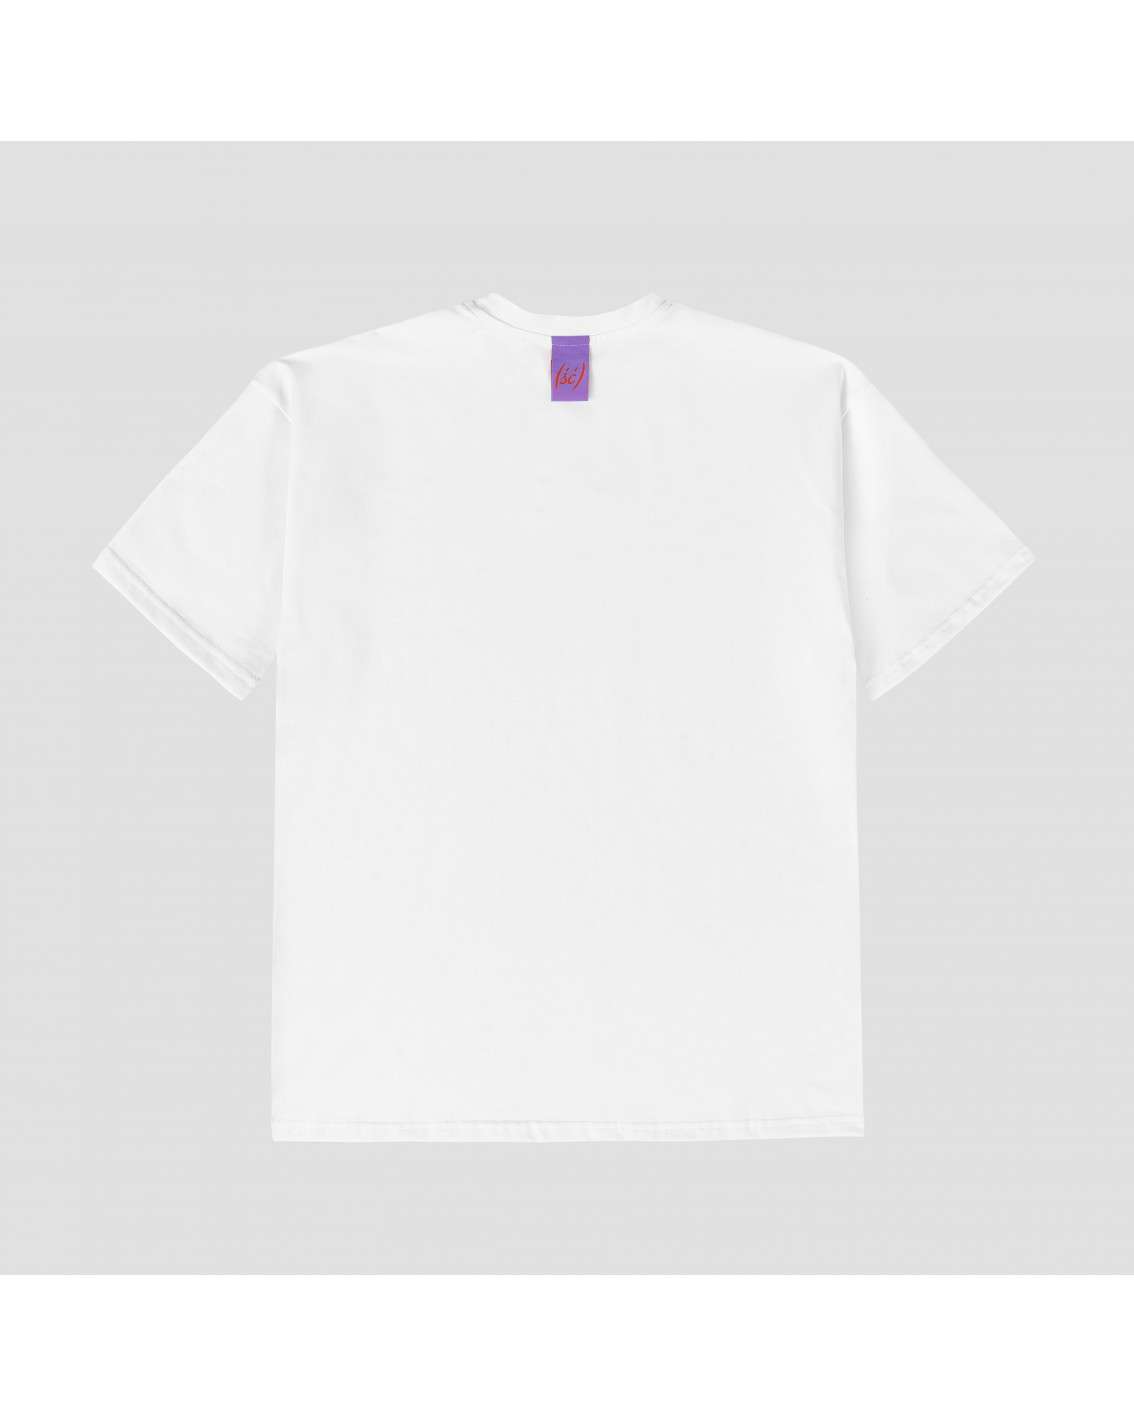 NEW! t-shirt biały Miło(ść) holo